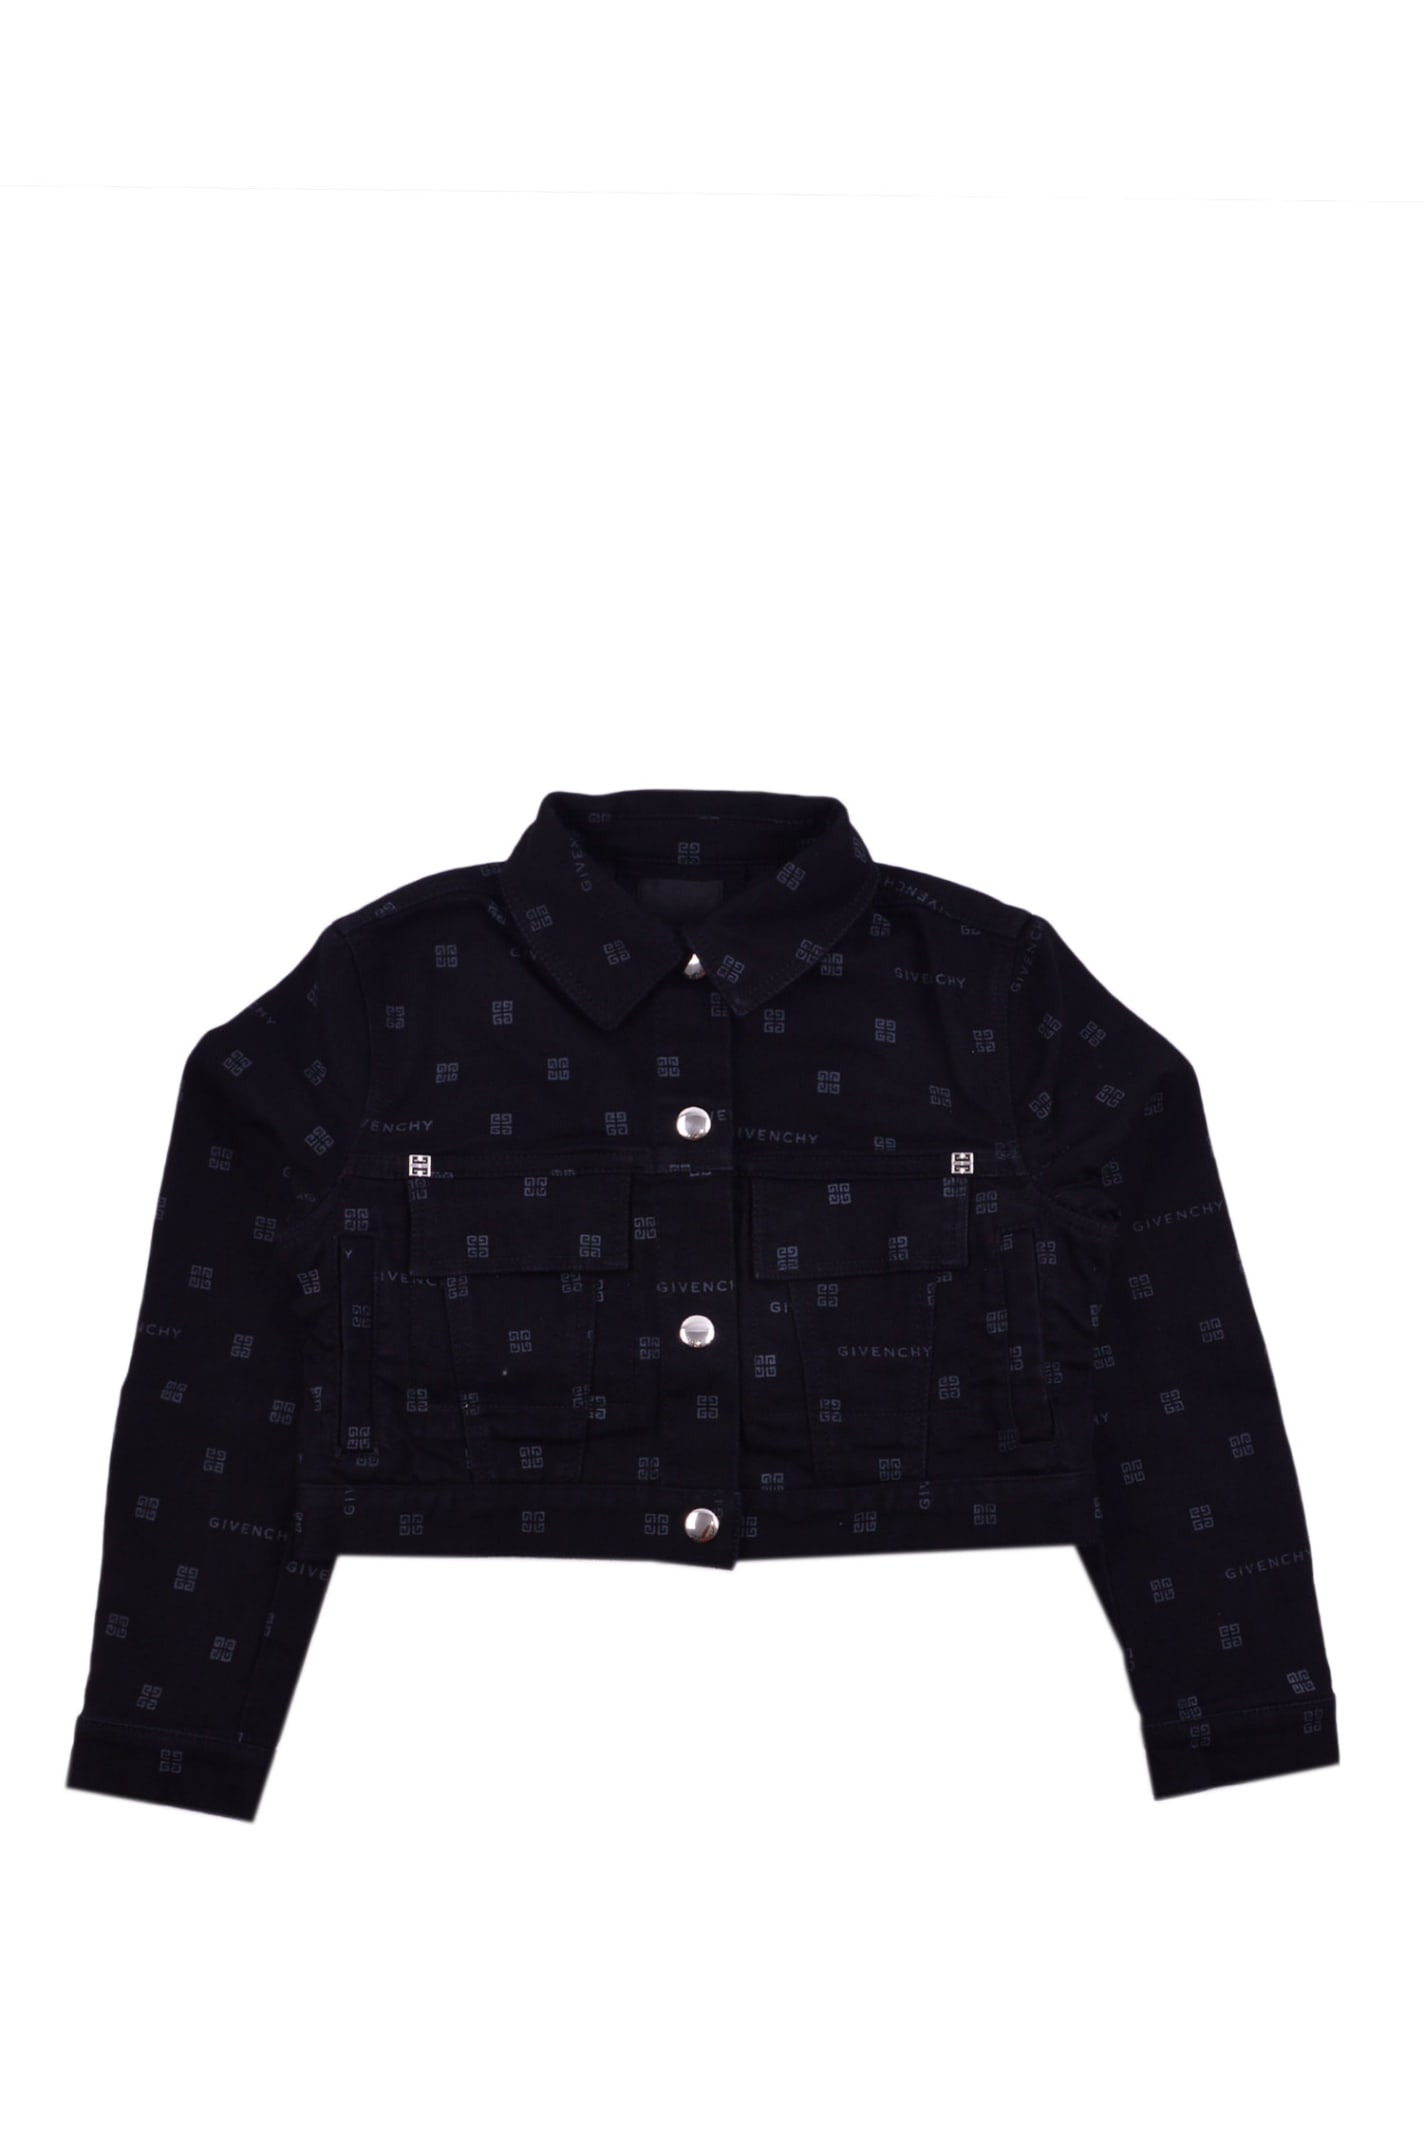 Givenchy Kids' Cotton Denim Jacket In Back